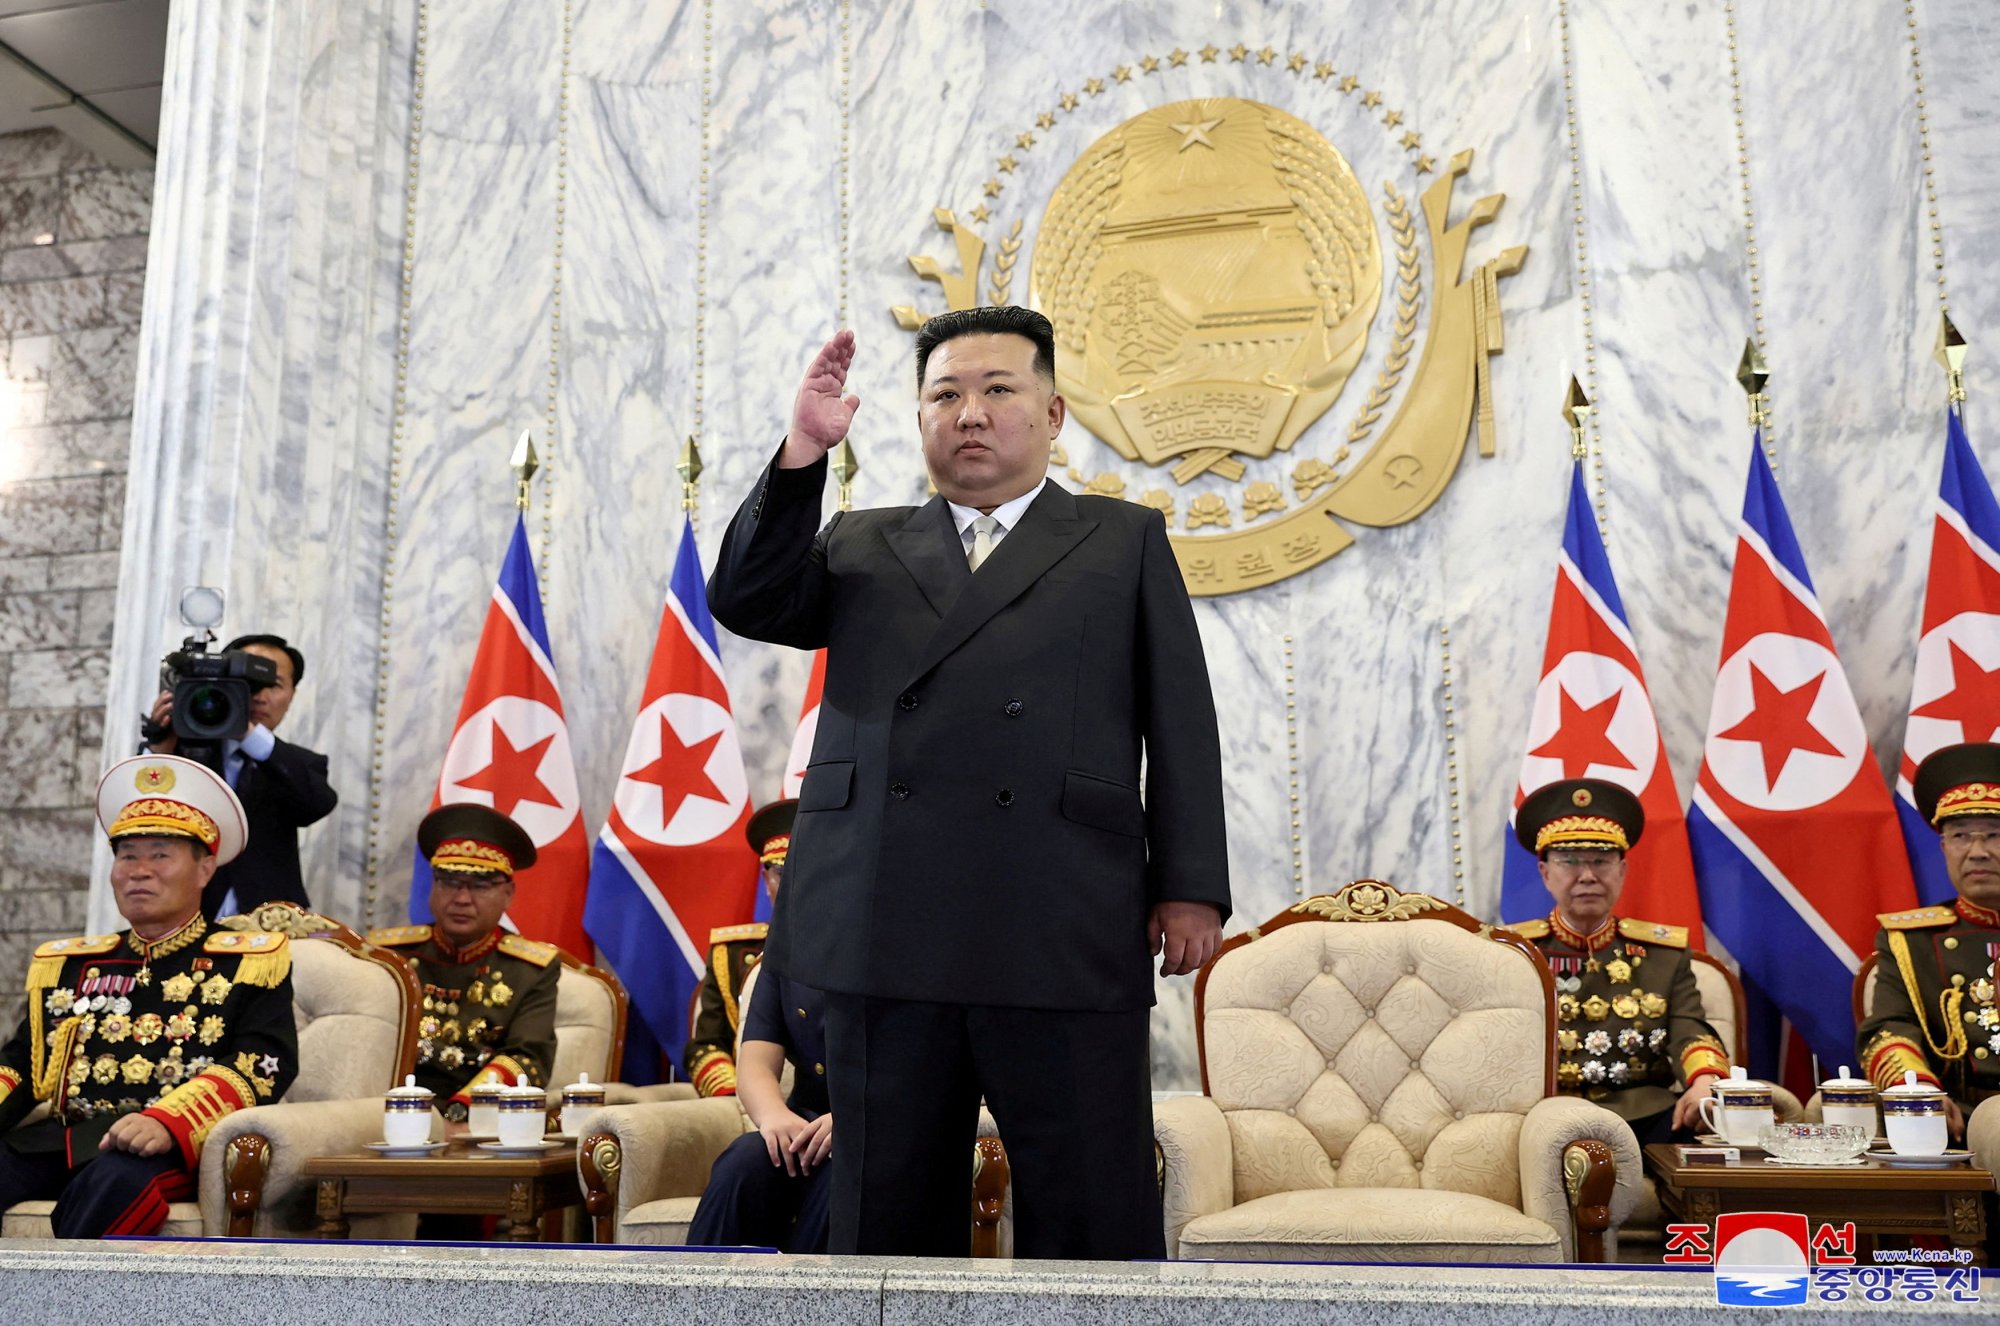 Κιμ Γιονγκ Ουν: Οι κάτοικοι στο Βλαδιβοστόκ της Ρωσίας αναμένουν τον Βορειοκορεάτη ηγέτη – Ανησυχούν οι ΗΠΑ